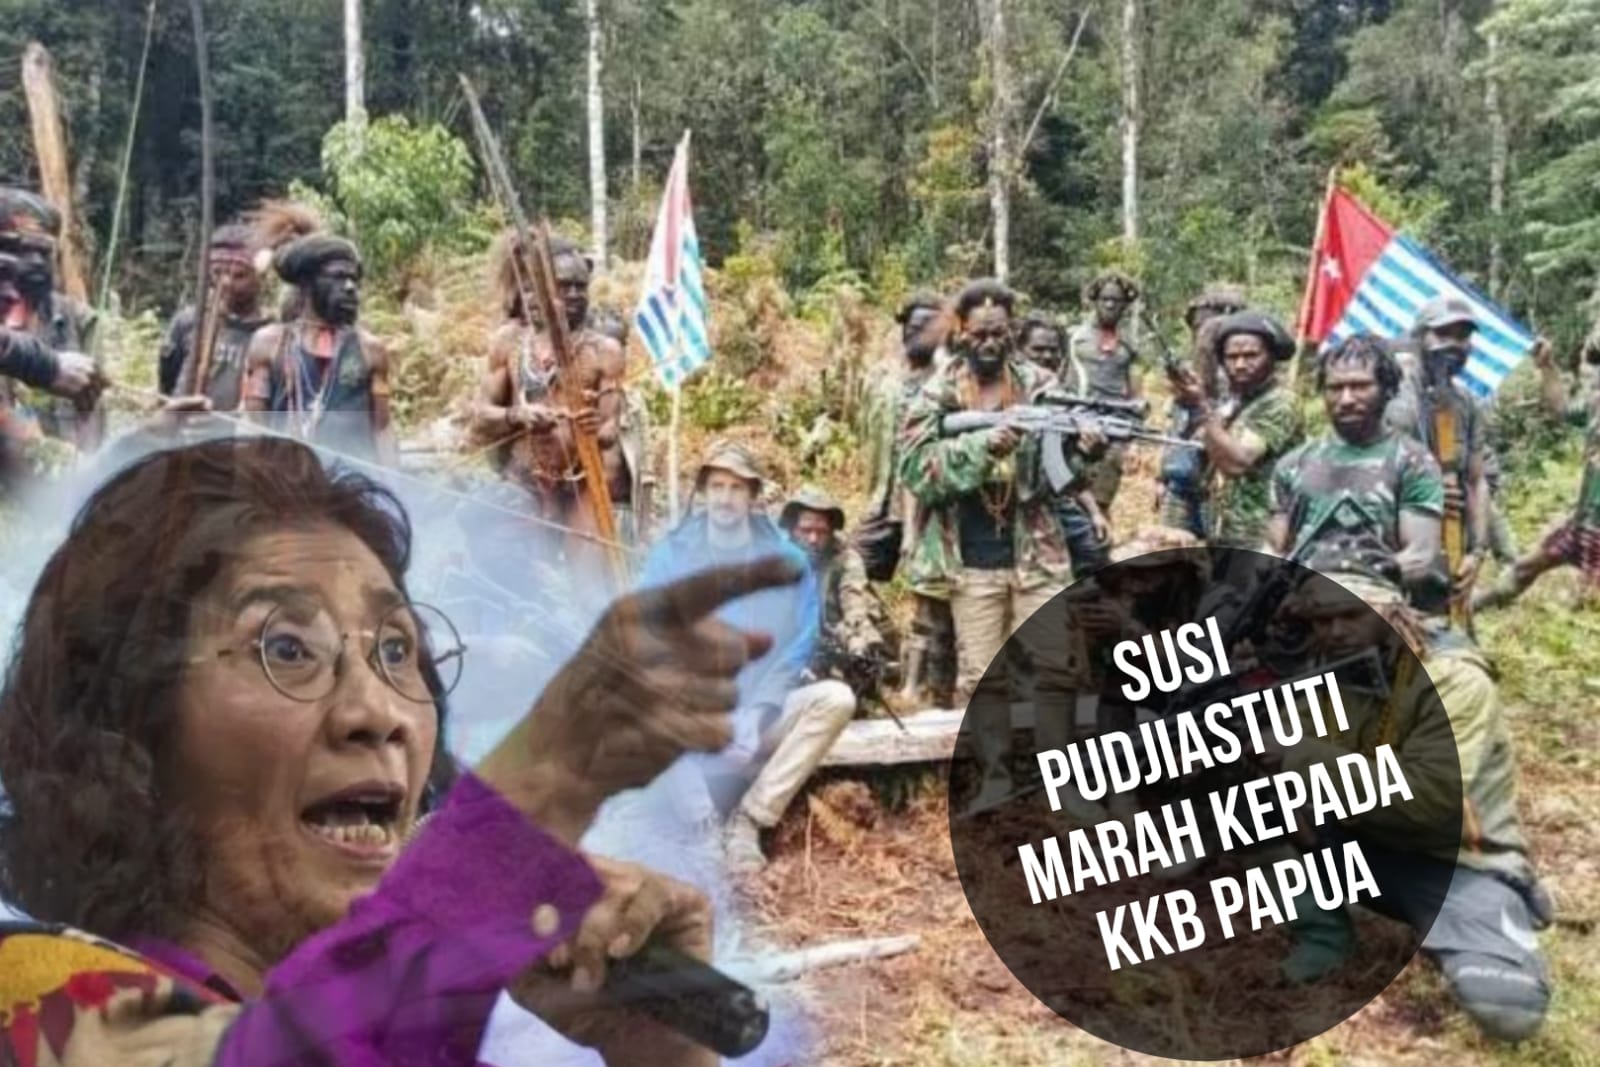 Murka! Susi Pudjiastuti Marah ke KKB Papua, hingga Ingin Minta Bom ke TNI!